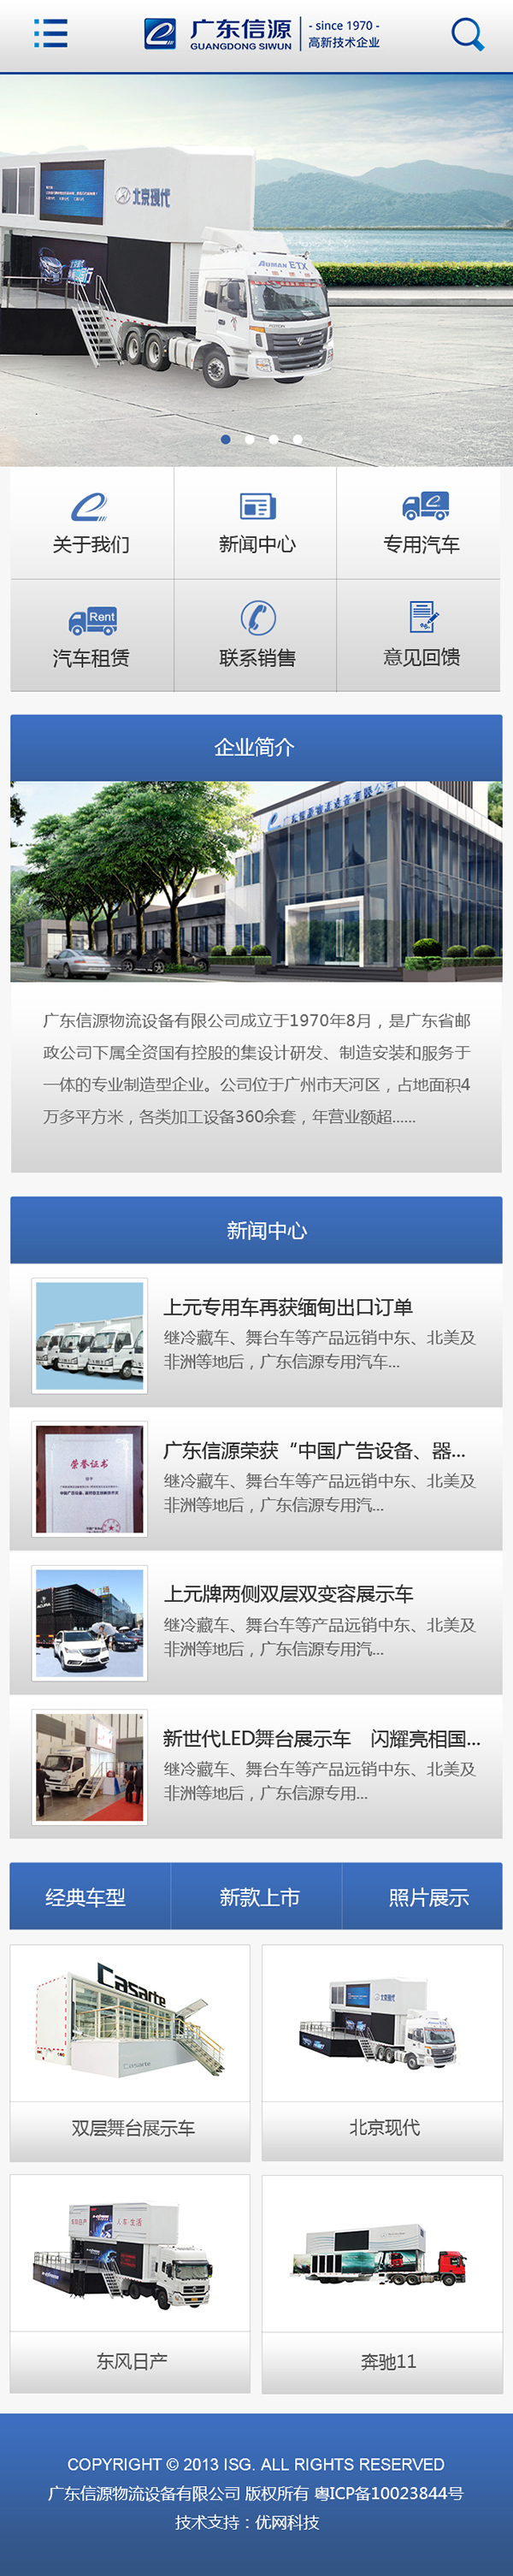 广东信源上元牌汽车微网站建设项目开通上线啦！